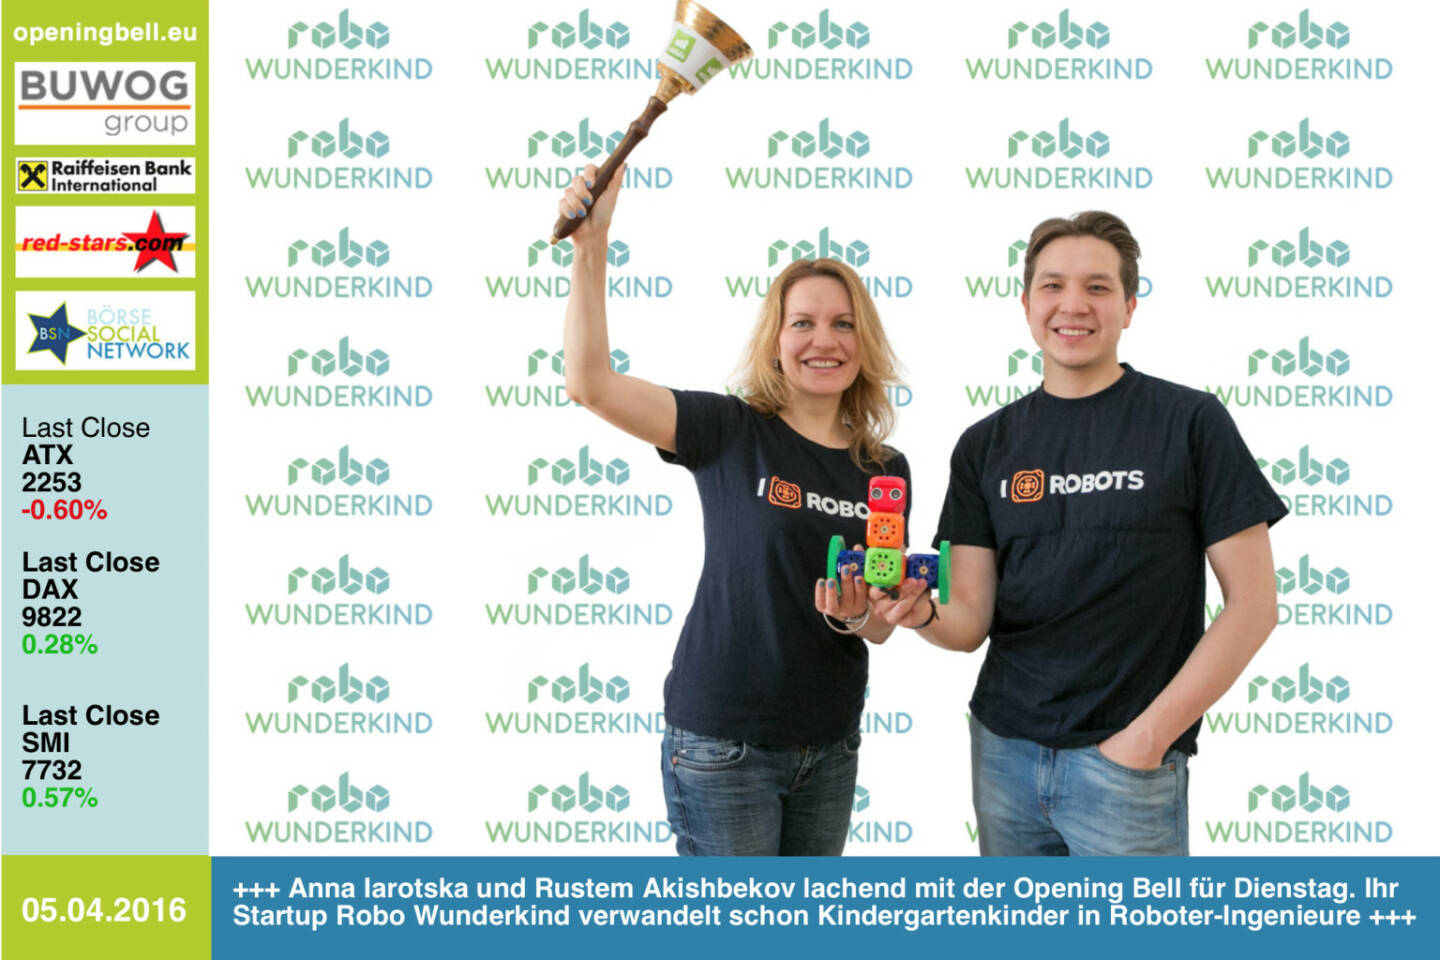 #openingbell am 5.4.: Anna Iarotska und Rustem Akishbekov lachend mit der Opening Bell für Dienstag. Ihr Startup Robo Wunderkind verwandelt schon Kindergartenkinder in Roboter-Ingenieure http://www.startrobo.com http://www.openingbell.eu